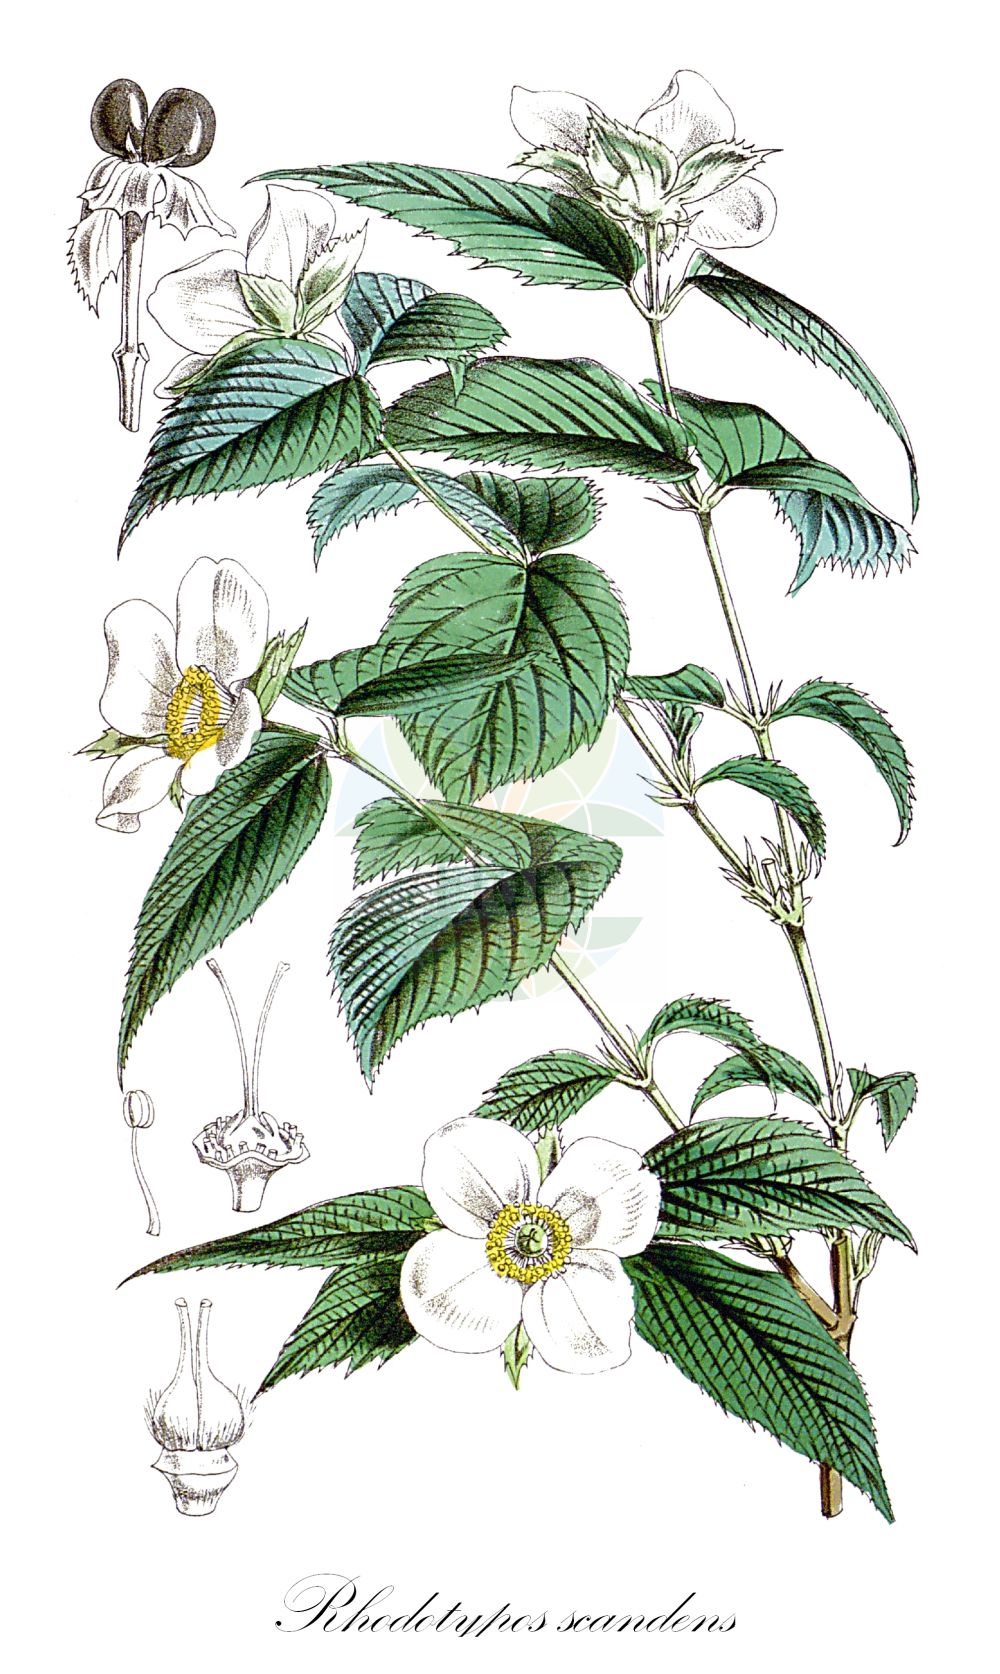 Historische Abbildung von Rhodotypos scandens (Scheinkerrie - Black Jet-bead). Das Bild zeigt Blatt, Bluete, Frucht und Same. ---- Historical Drawing of Rhodotypos scandens (Scheinkerrie - Black Jet-bead). The image is showing leaf, flower, fruit and seed.(Rhodotypos scandens,Scheinkerrie,Black Jet-bead,Corchorus scandens,Rhodotypos kerrioides,Rhodotypos scandens,Rhodotypos tetrapetalus,Scheinkerrie,Black Jet-bead,Jetbead,Rhodotypos,Scheinkerrie,Rosaceae,Rosengewächse,Rose family,Blatt,Bluete,Frucht,Same,leaf,flower,fruit,seed,Fitch et al. (1880))